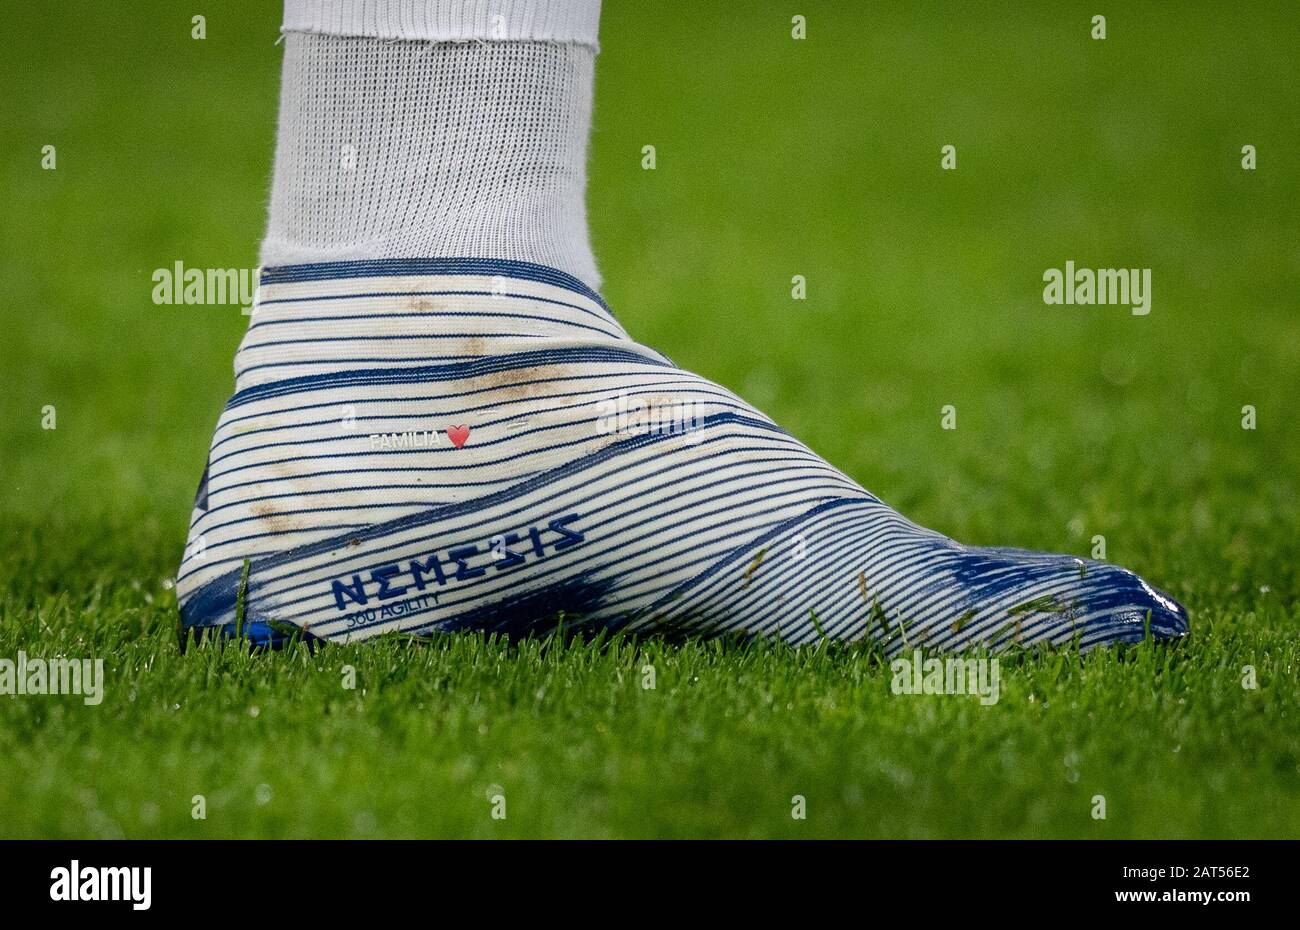 Londres, Reino Unido. 29 de enero de 2020. Las botas de fútbol Adidas Nemesis de Roberto Firmino de Liverpool que FAMILIA y corazón del amor durante el partido de la Premier